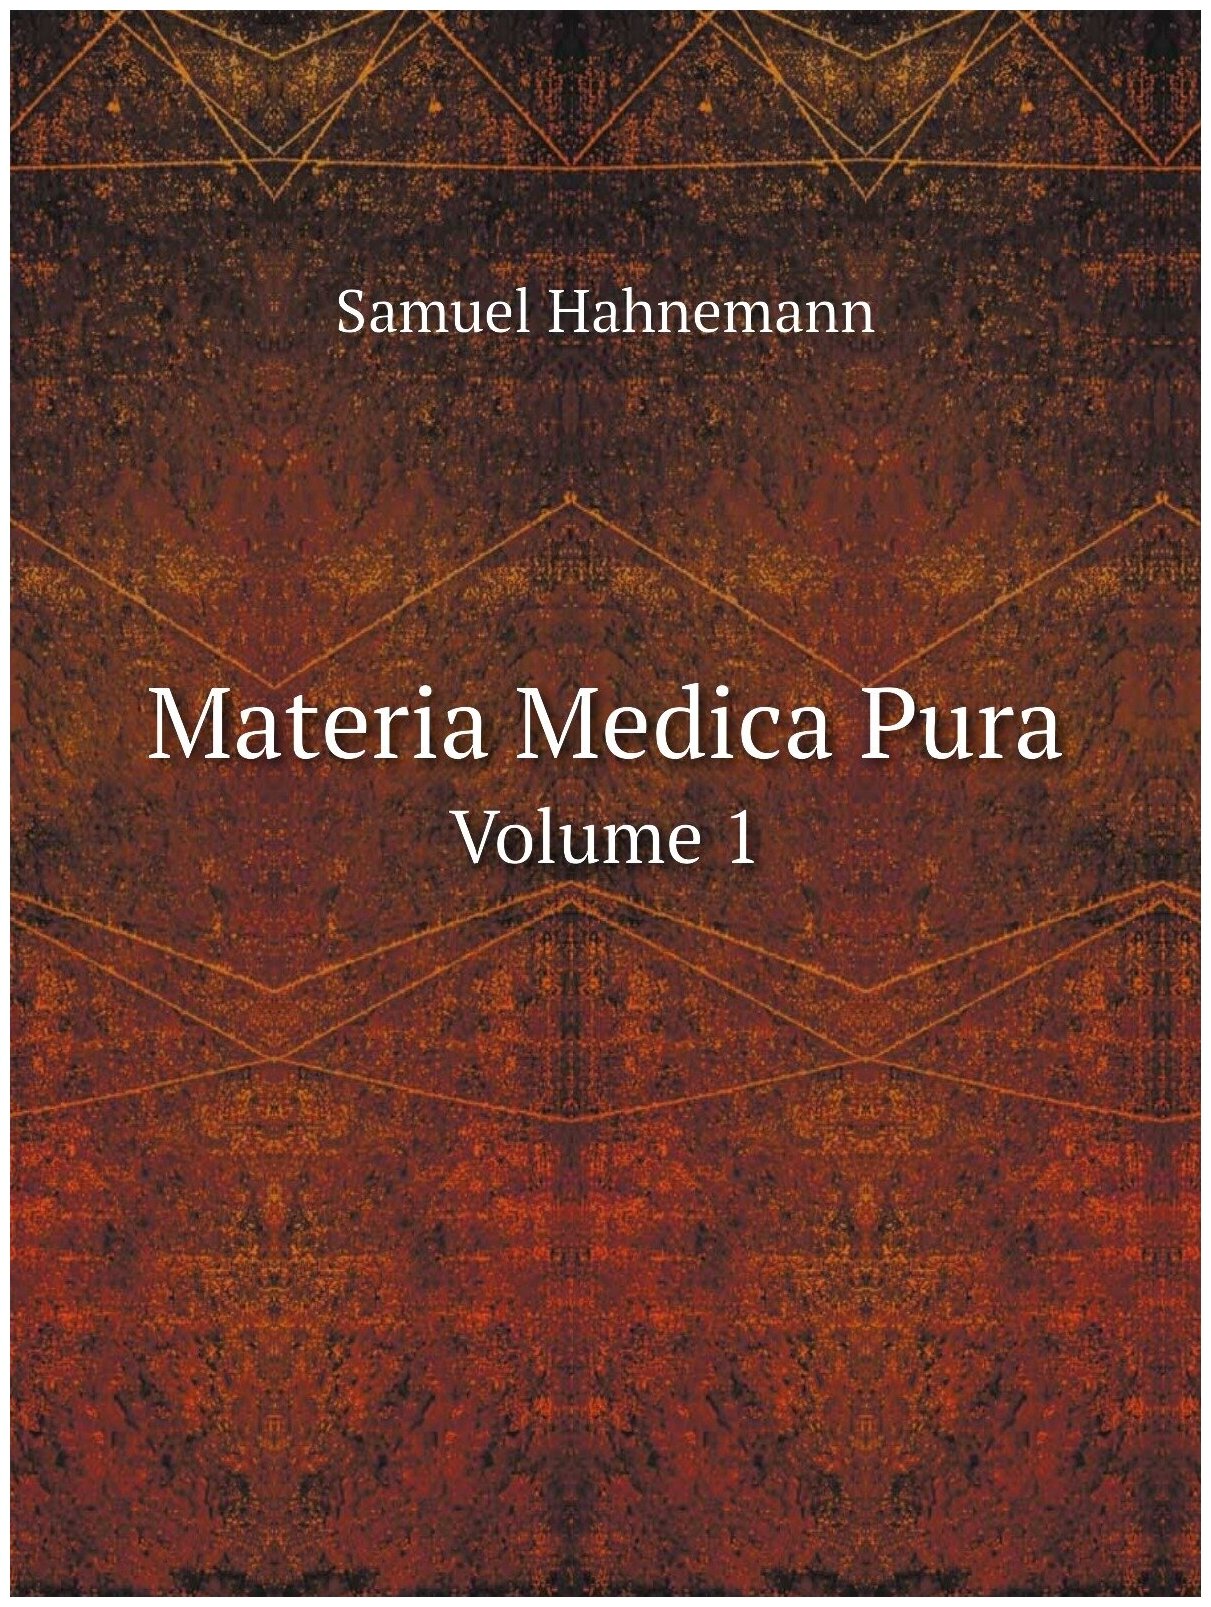 Materia Medica Pura. Volume 1